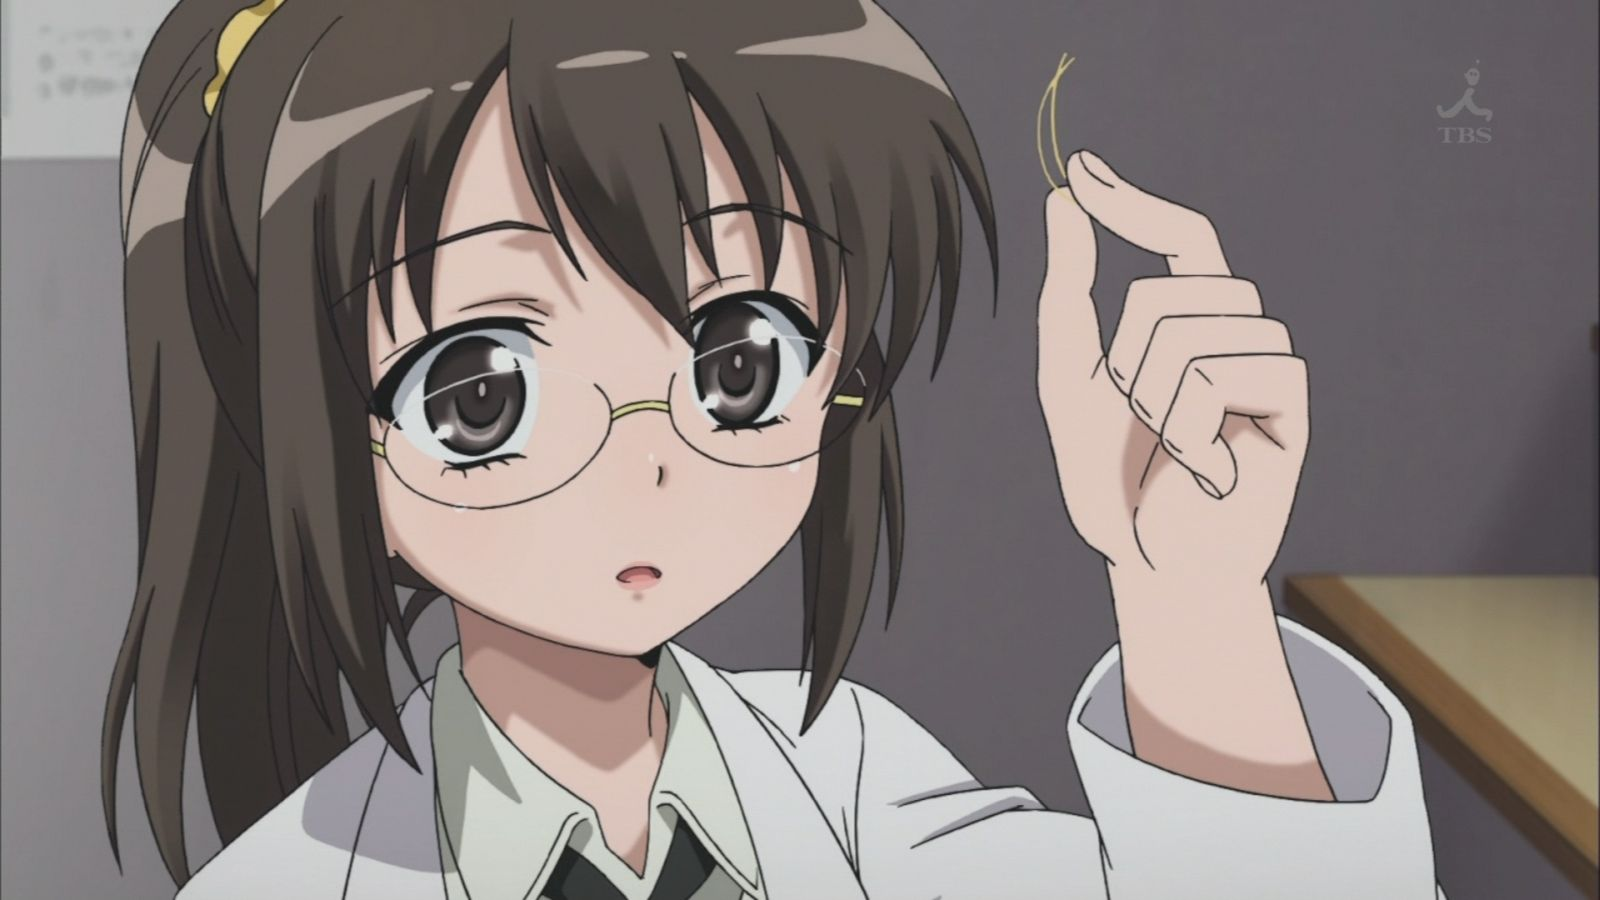 tokoh anime cewek yg berkaca mata terbaik (menurut ane)